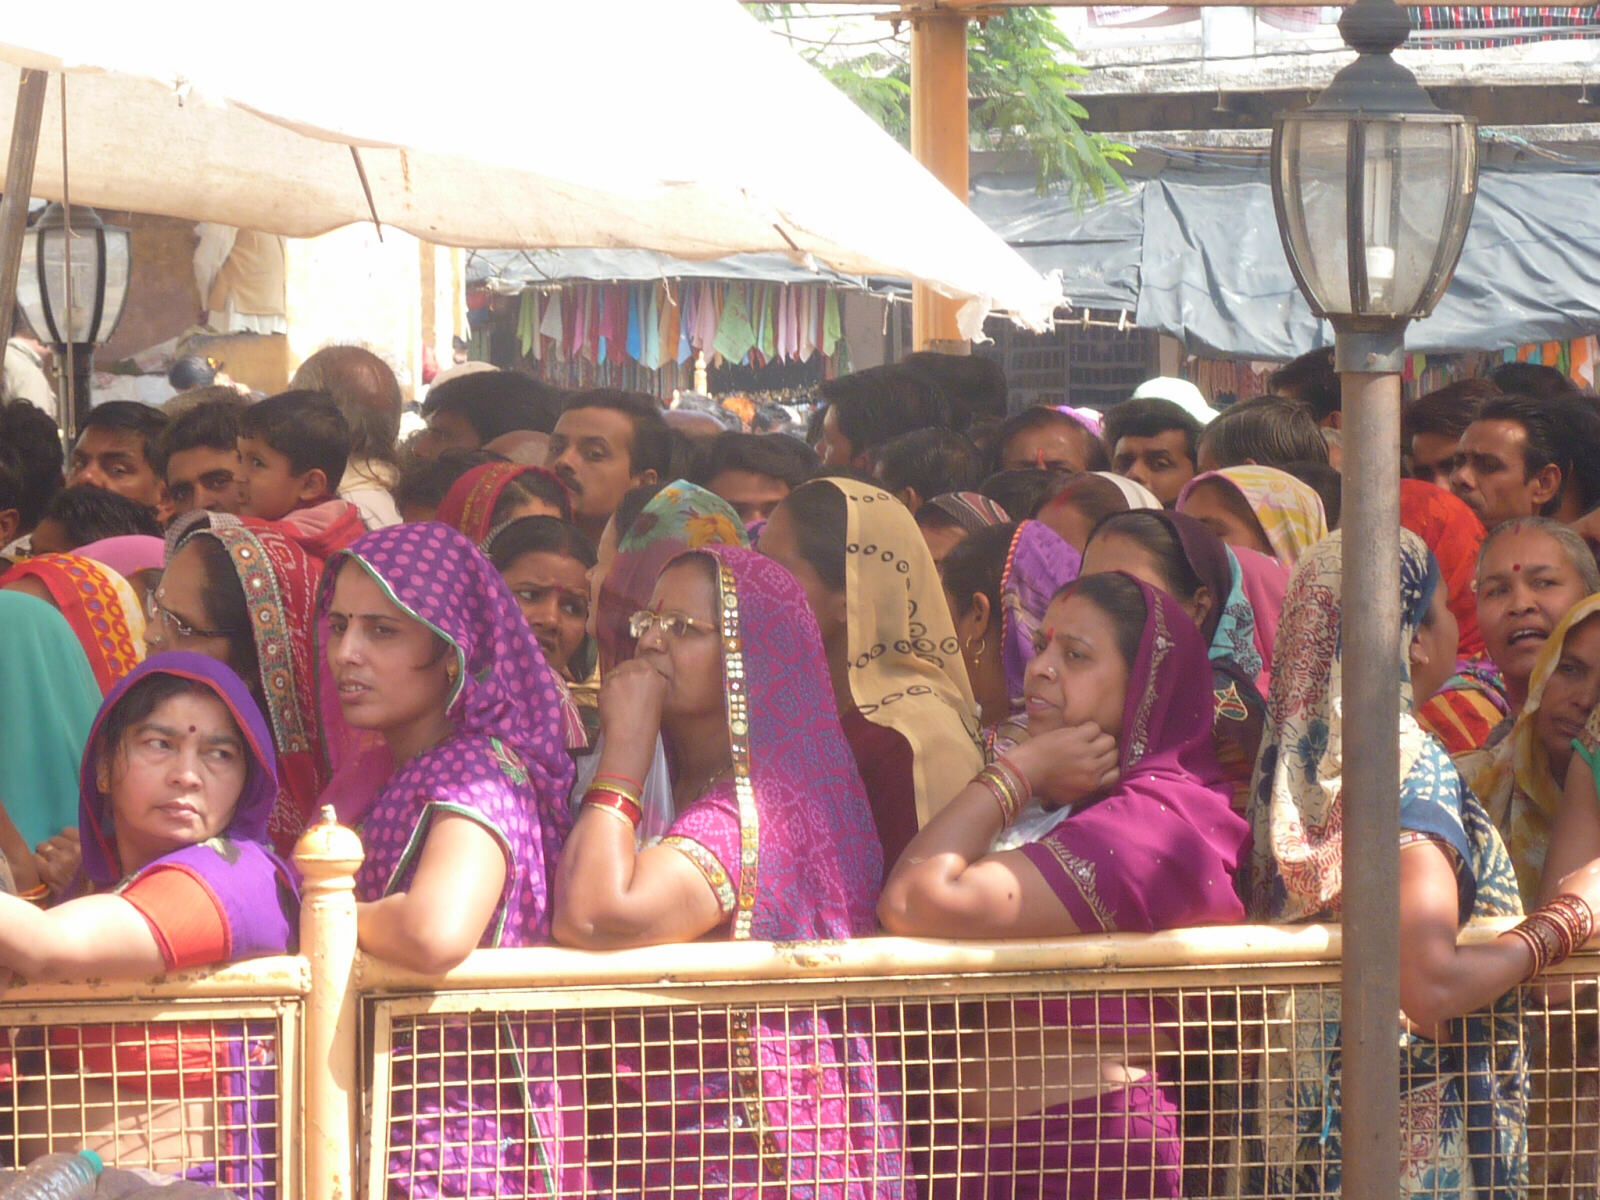 A queue of pilgrims at Ram Raja temple in Orchha, India